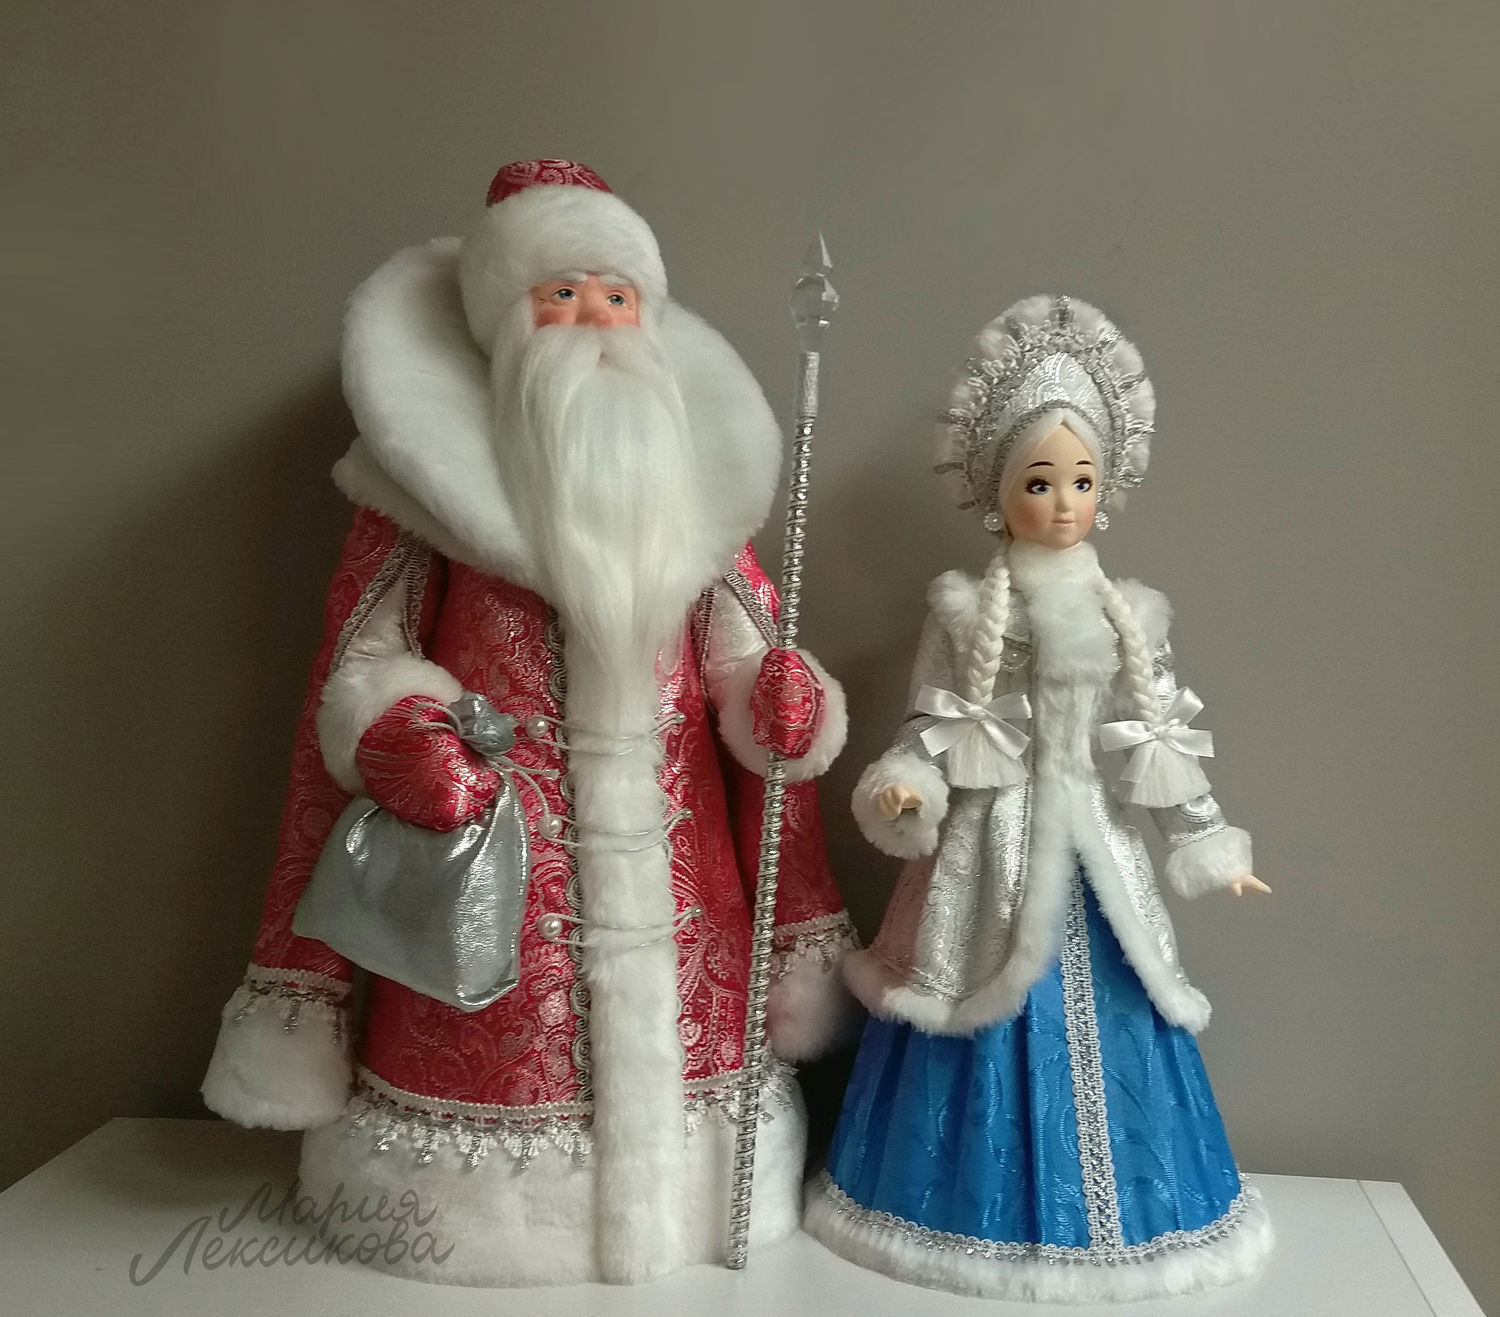 Новогодние игрушки из фетра «Дед мороз и Снегурочка»